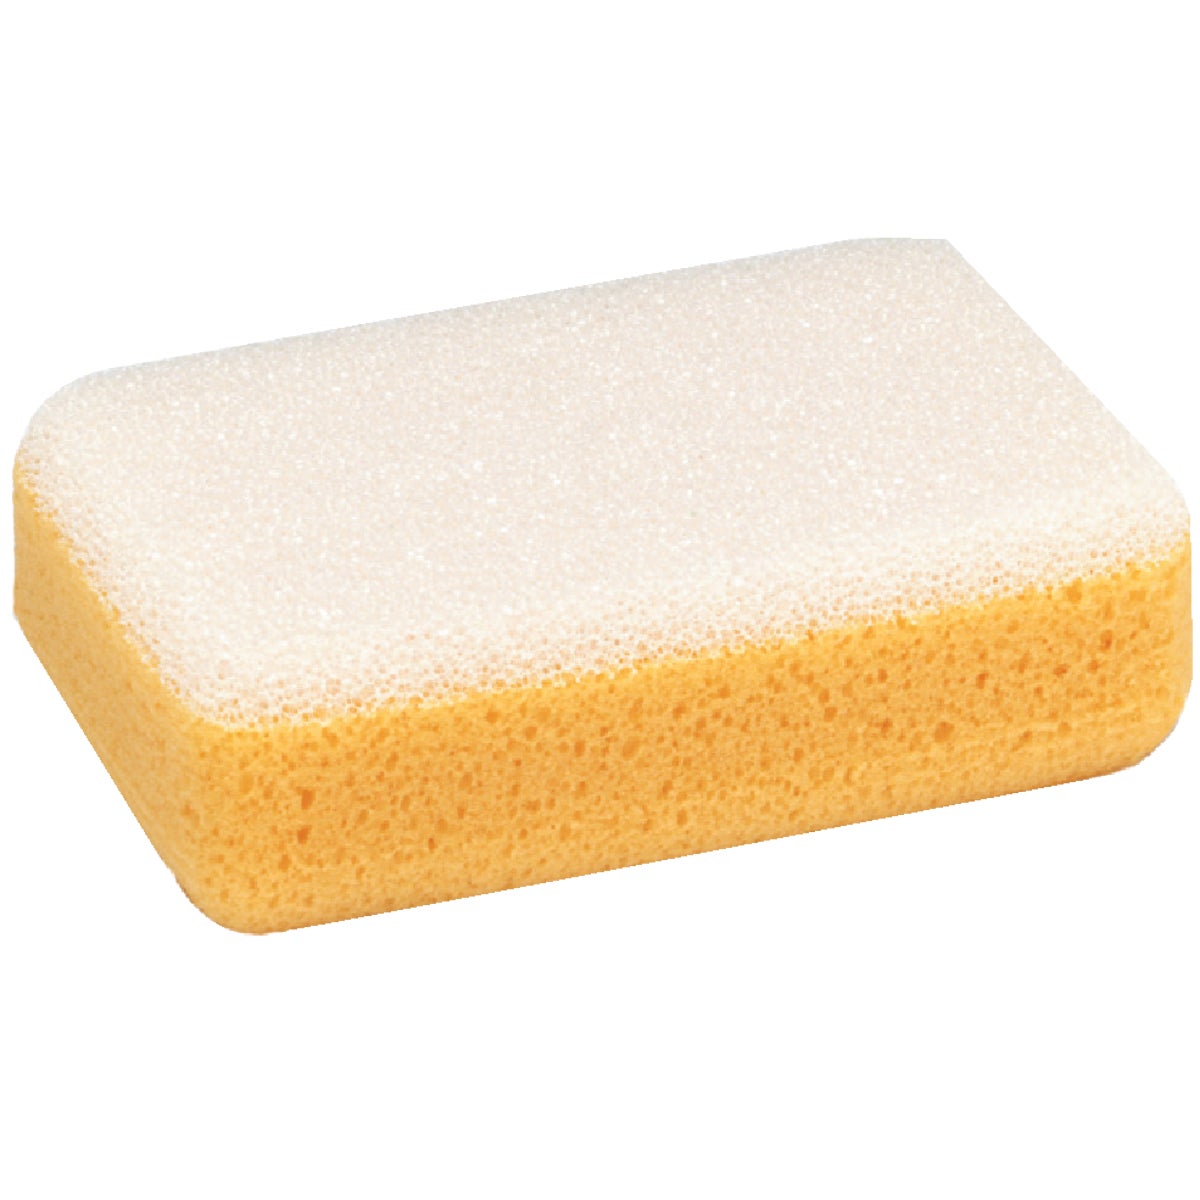 16460 Marshalltown TLW Tile Grout Sponge Image